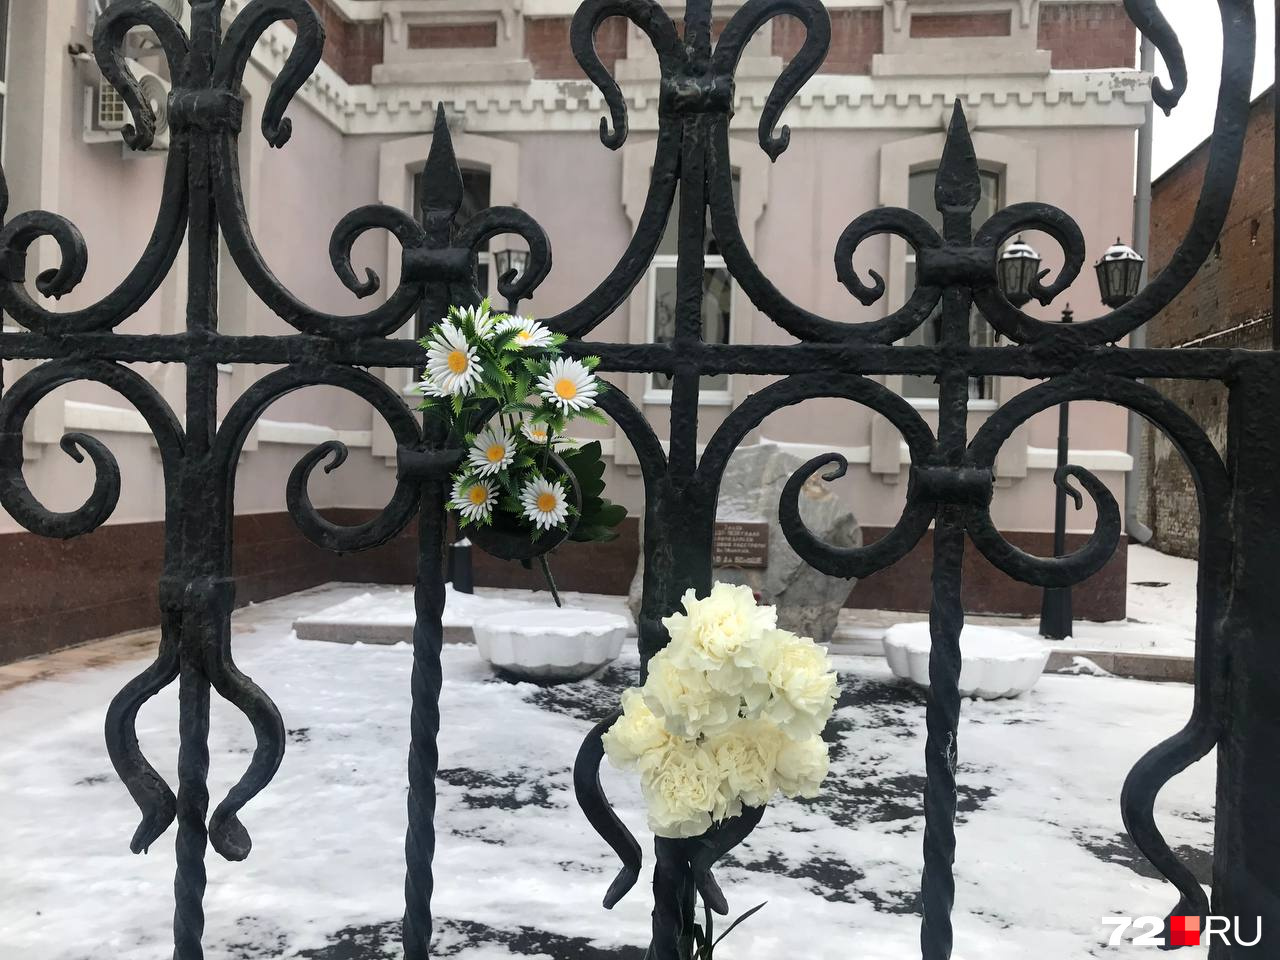 Те, кто не смог пройти к памятнику, оставляли цветы на заборе